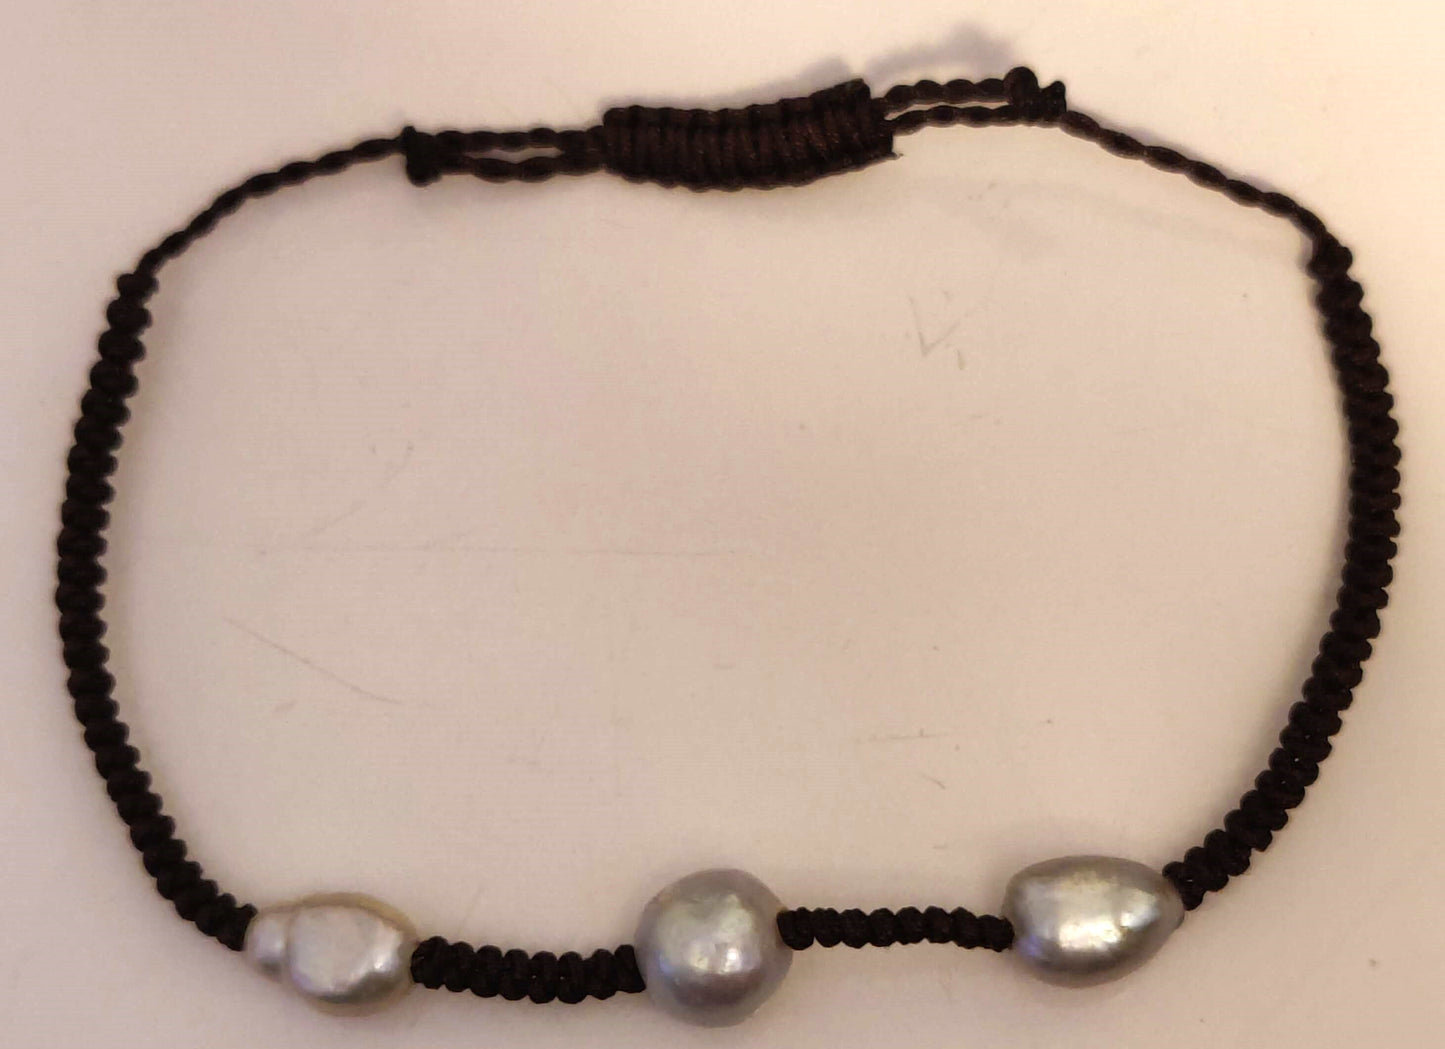 8.5mm - 10mm Baroque Genuine Cultured 3-Pearls Adjustable Bracelet